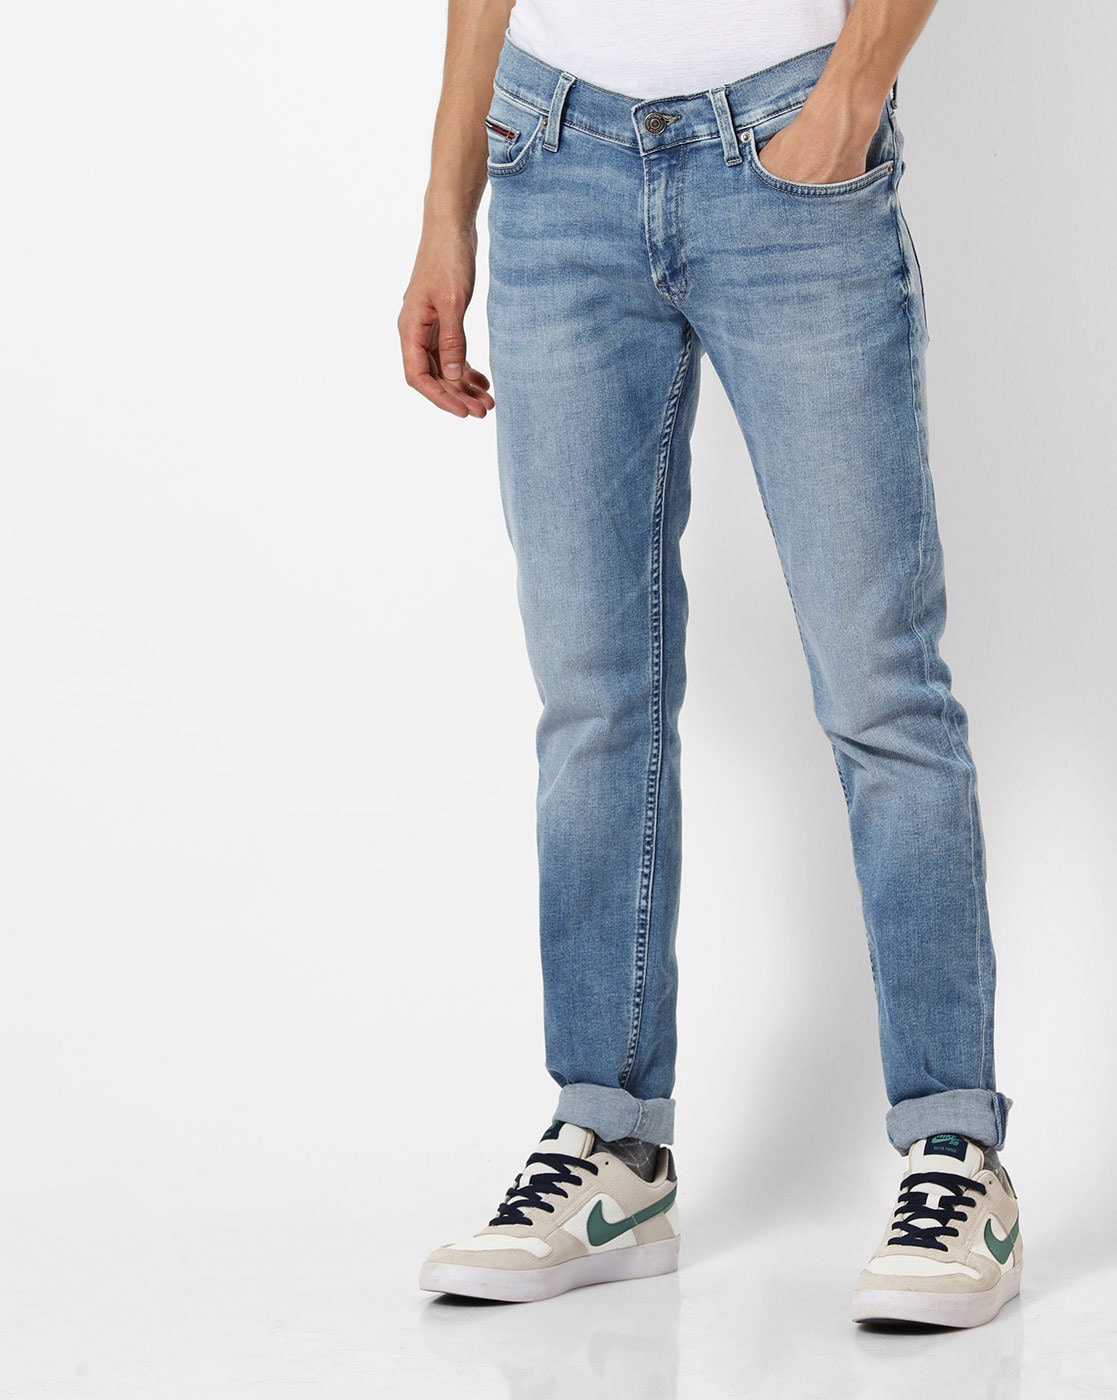 jeans tommy hilfiger outlet